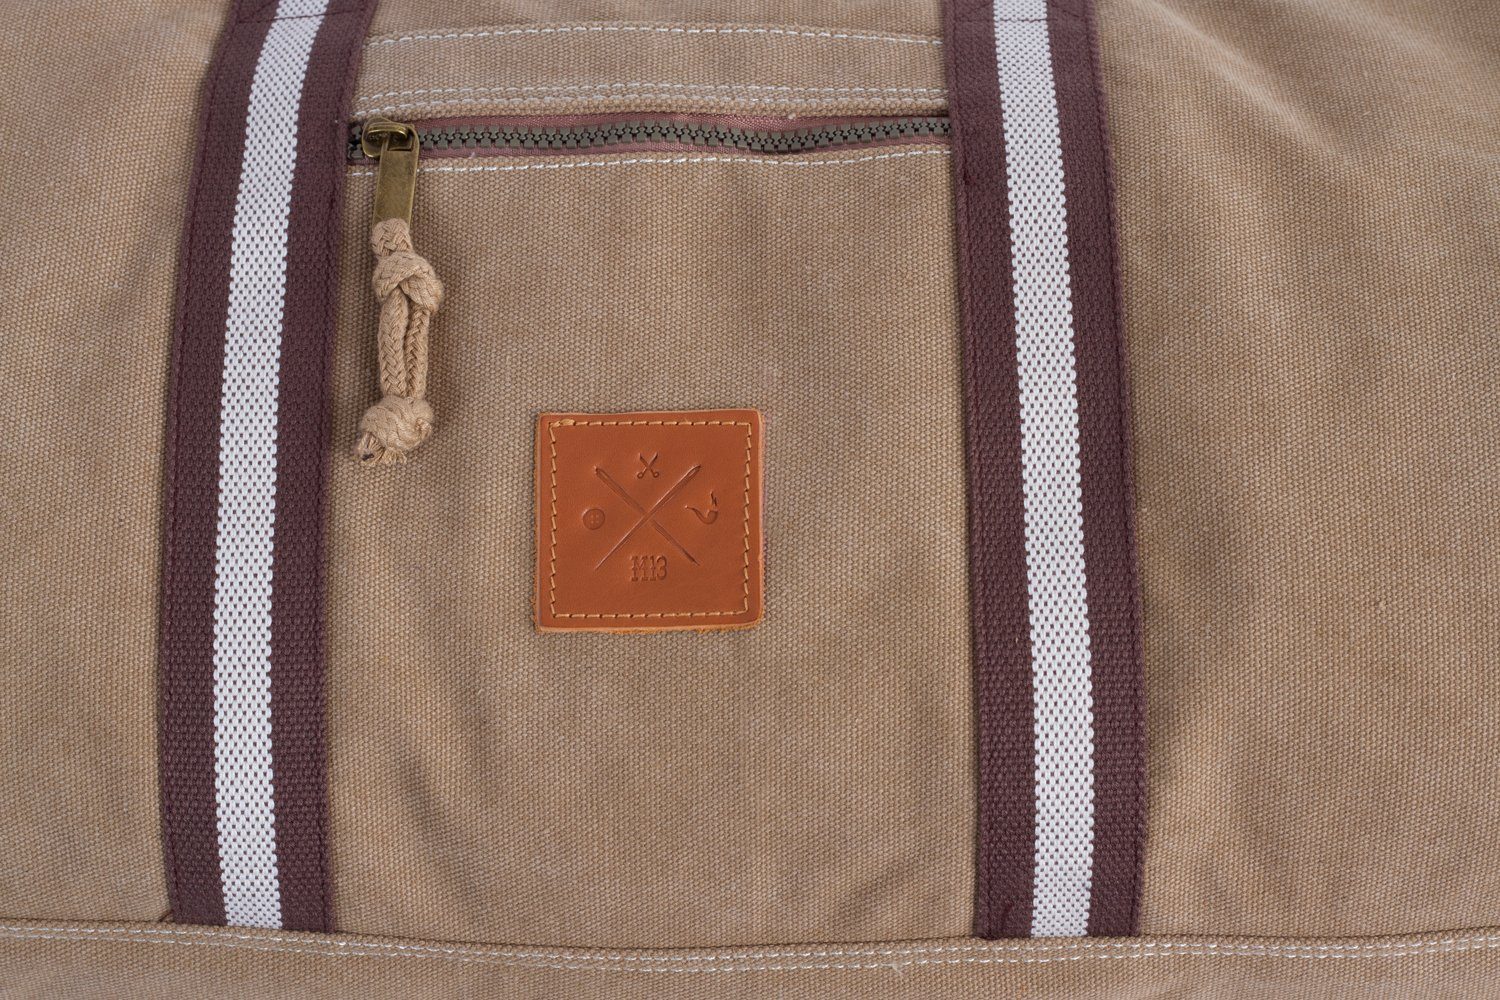 Bag Canvas Sand Manufaktur13 - Barrel Sporttasche, Sporttasche Fassungsvermögen 45L Bag, Duffel Reisetasche,